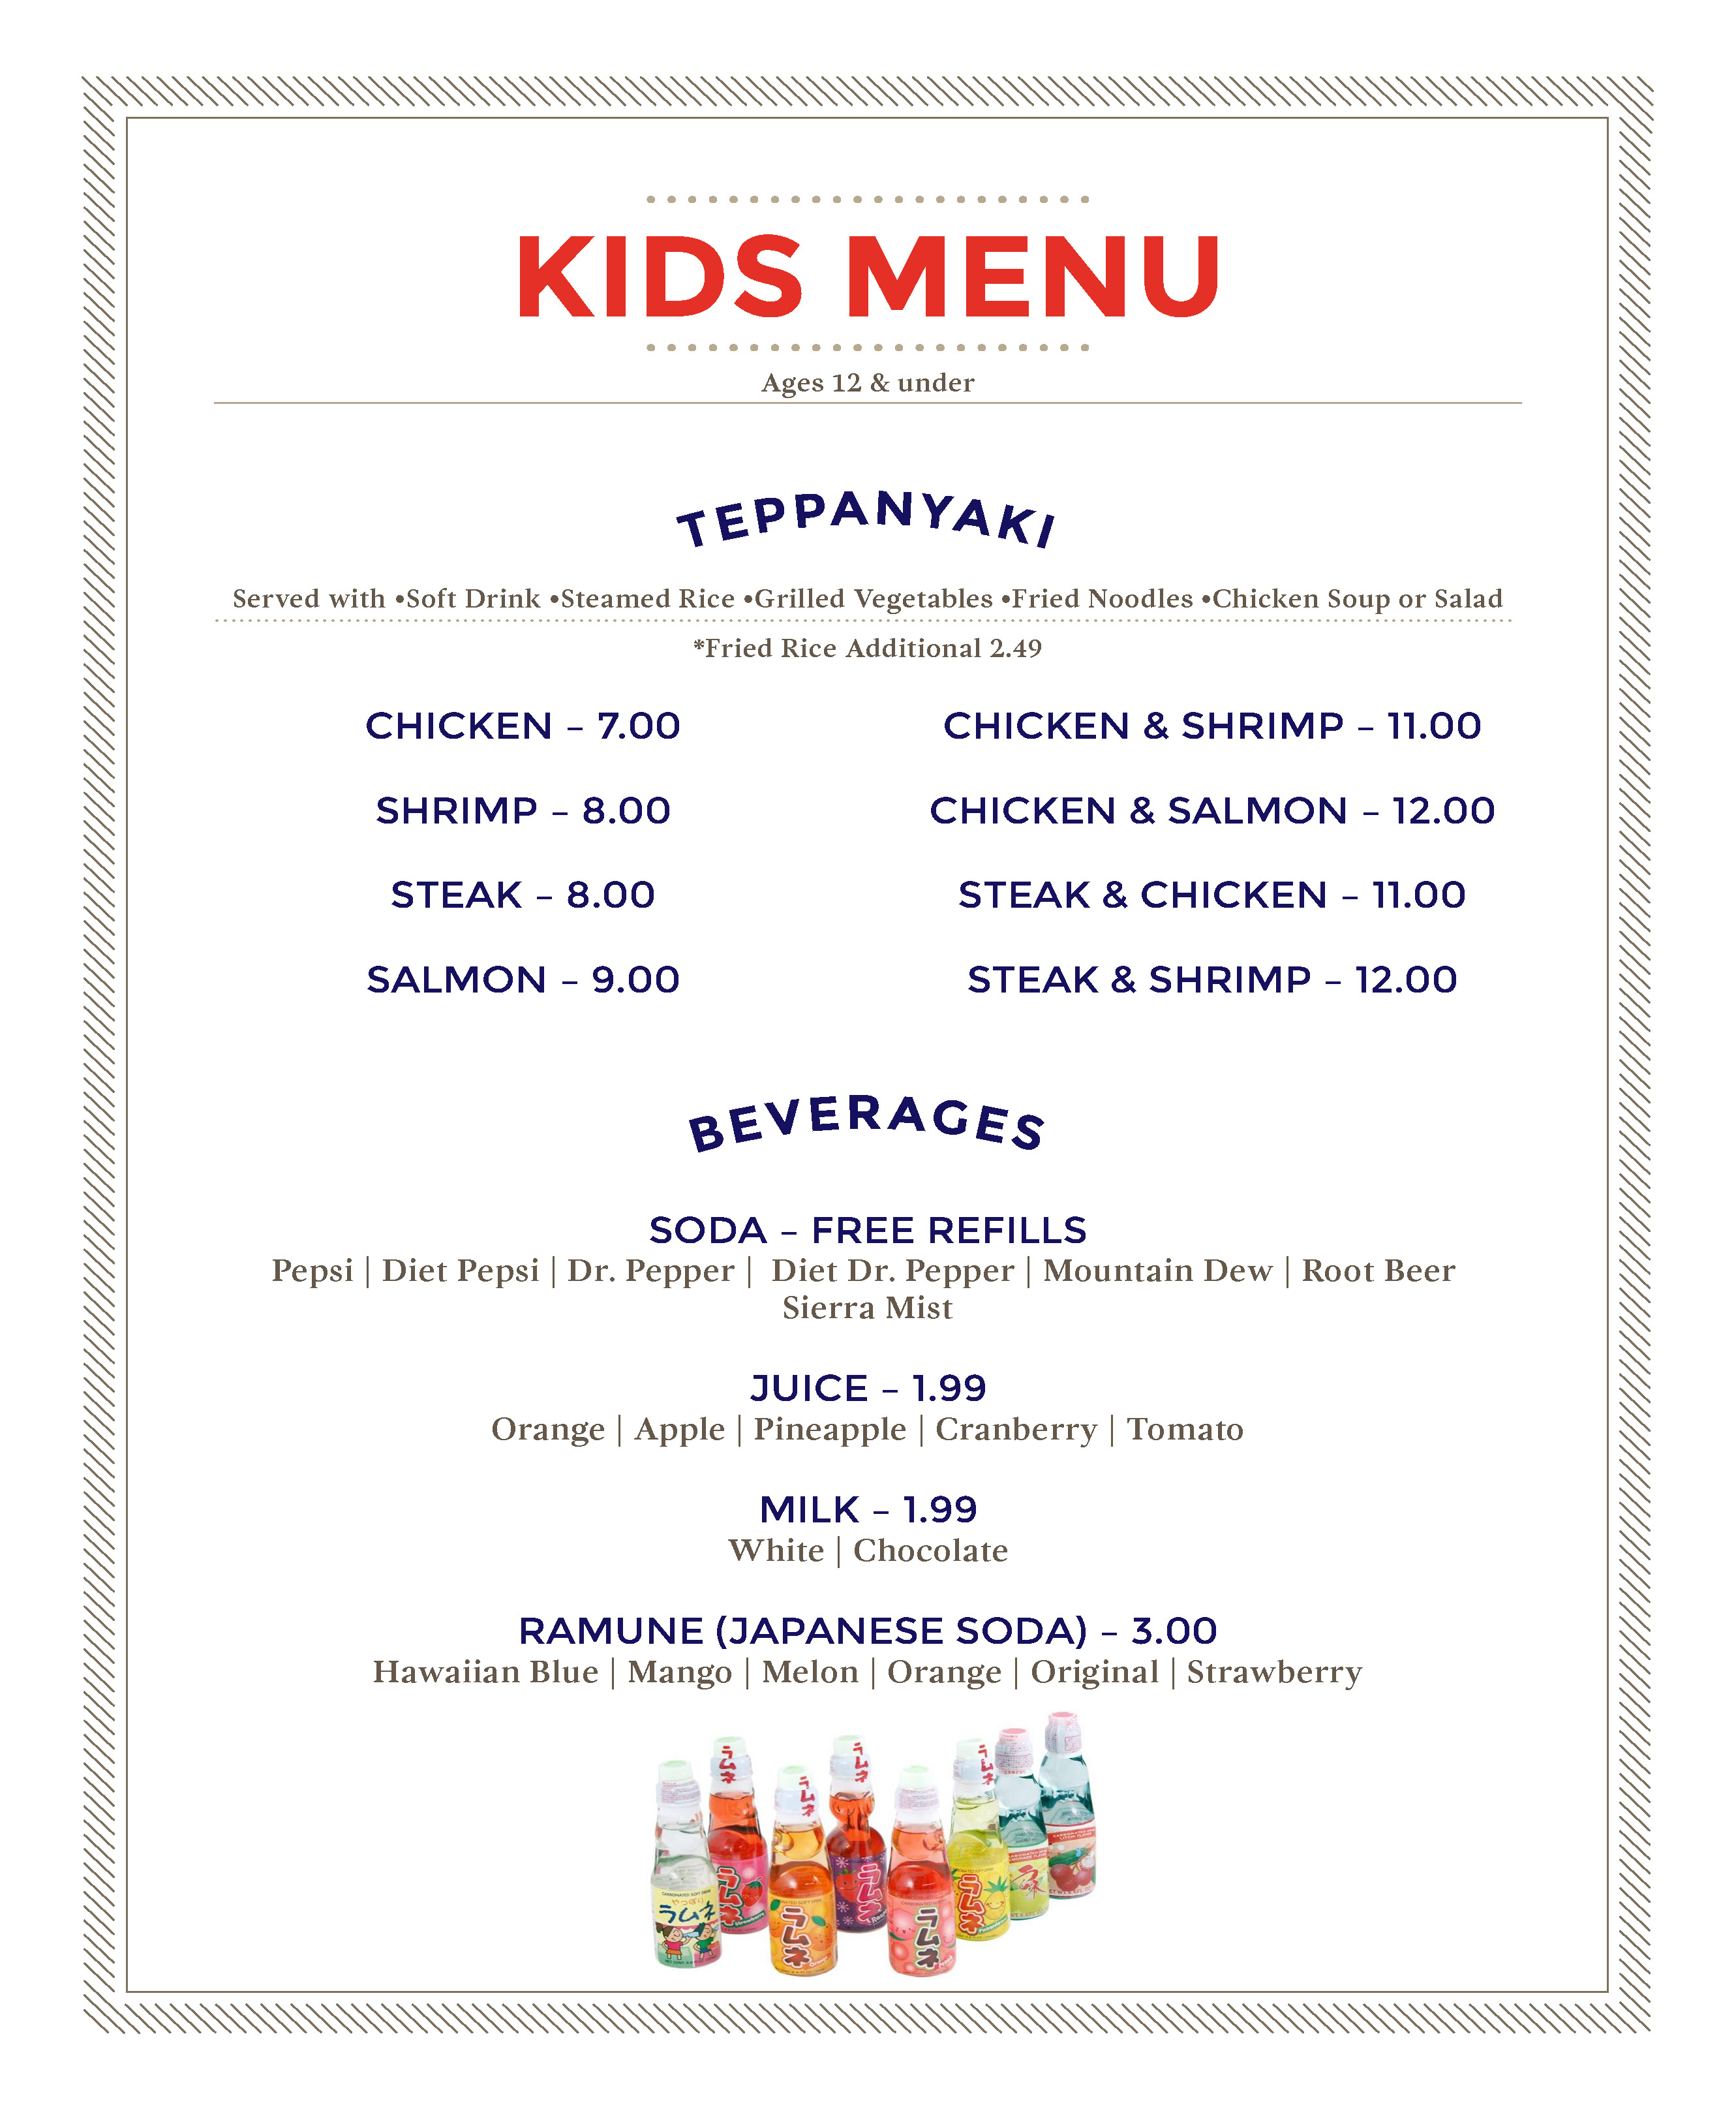 kids menu images